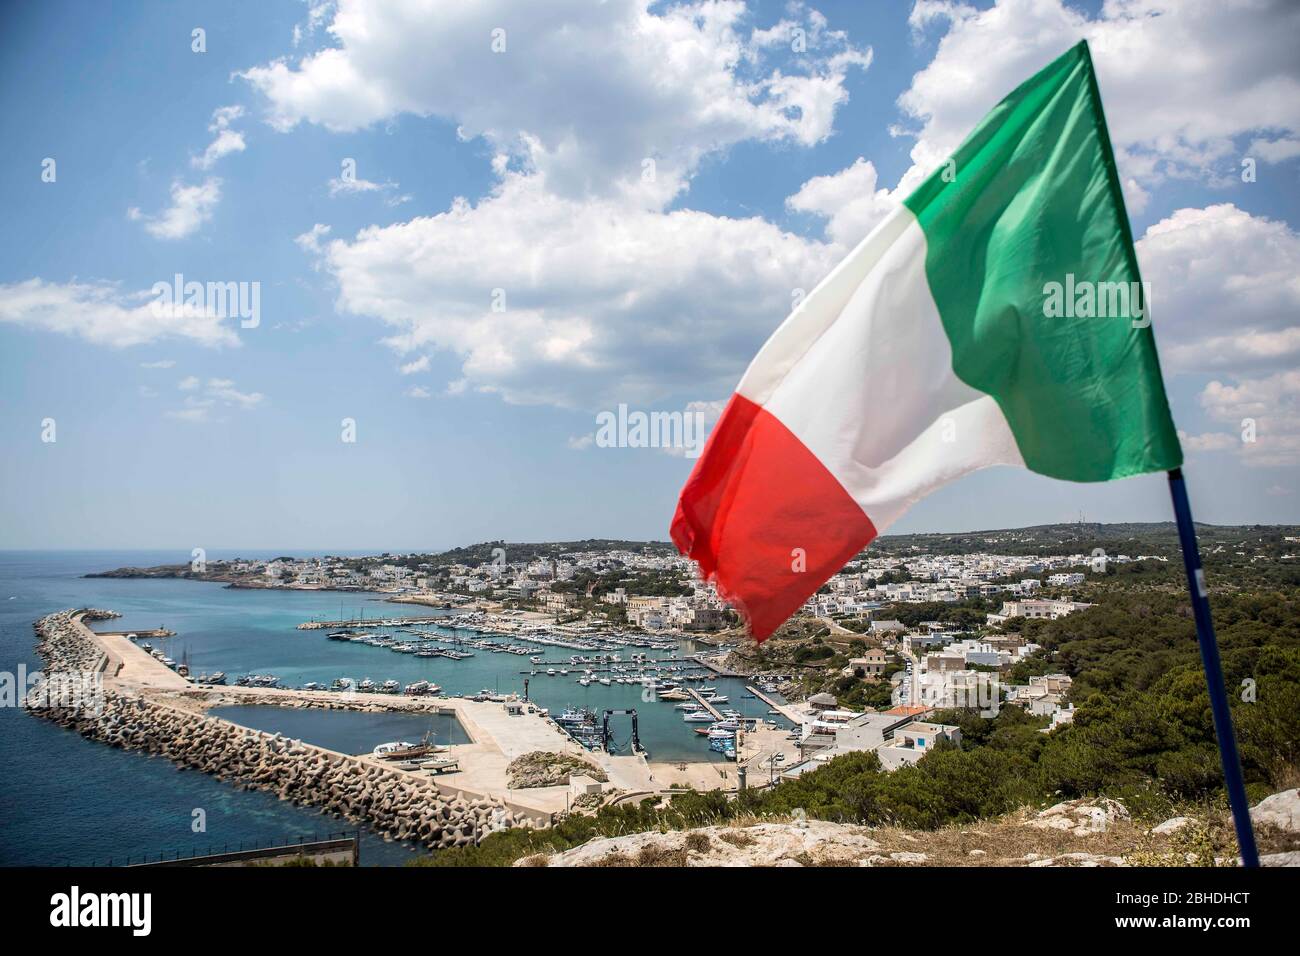 Die italienische Flagge in den Farben Grün-Weiss-Rot wht über der Stadt Santa Maria di Leuca in Apulien in Süditalien. Unterhalb des Kaps sieht man di Foto de stock